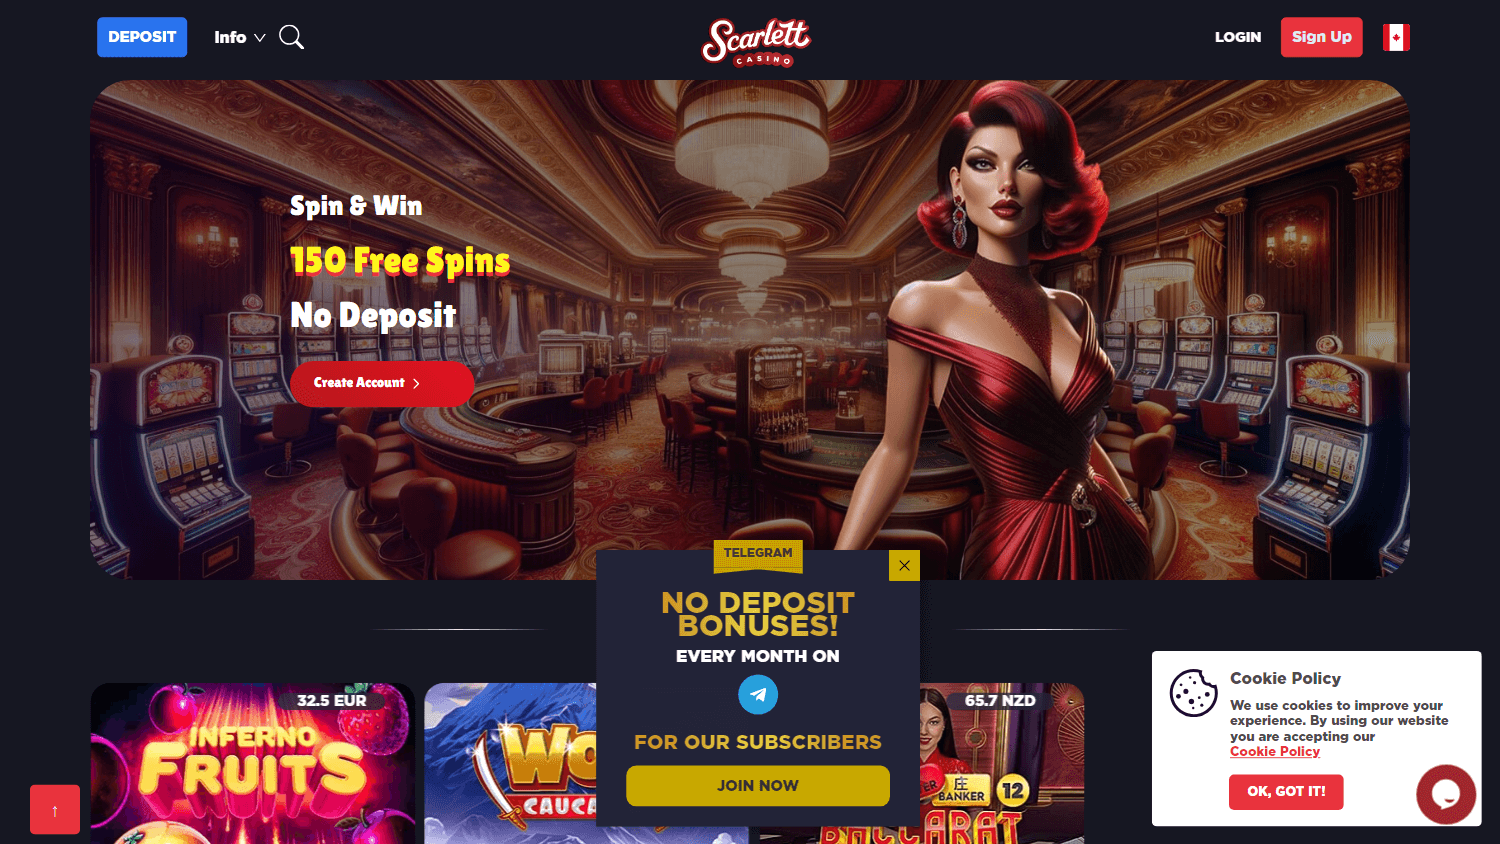 scarlett_casino_homepage_desktop